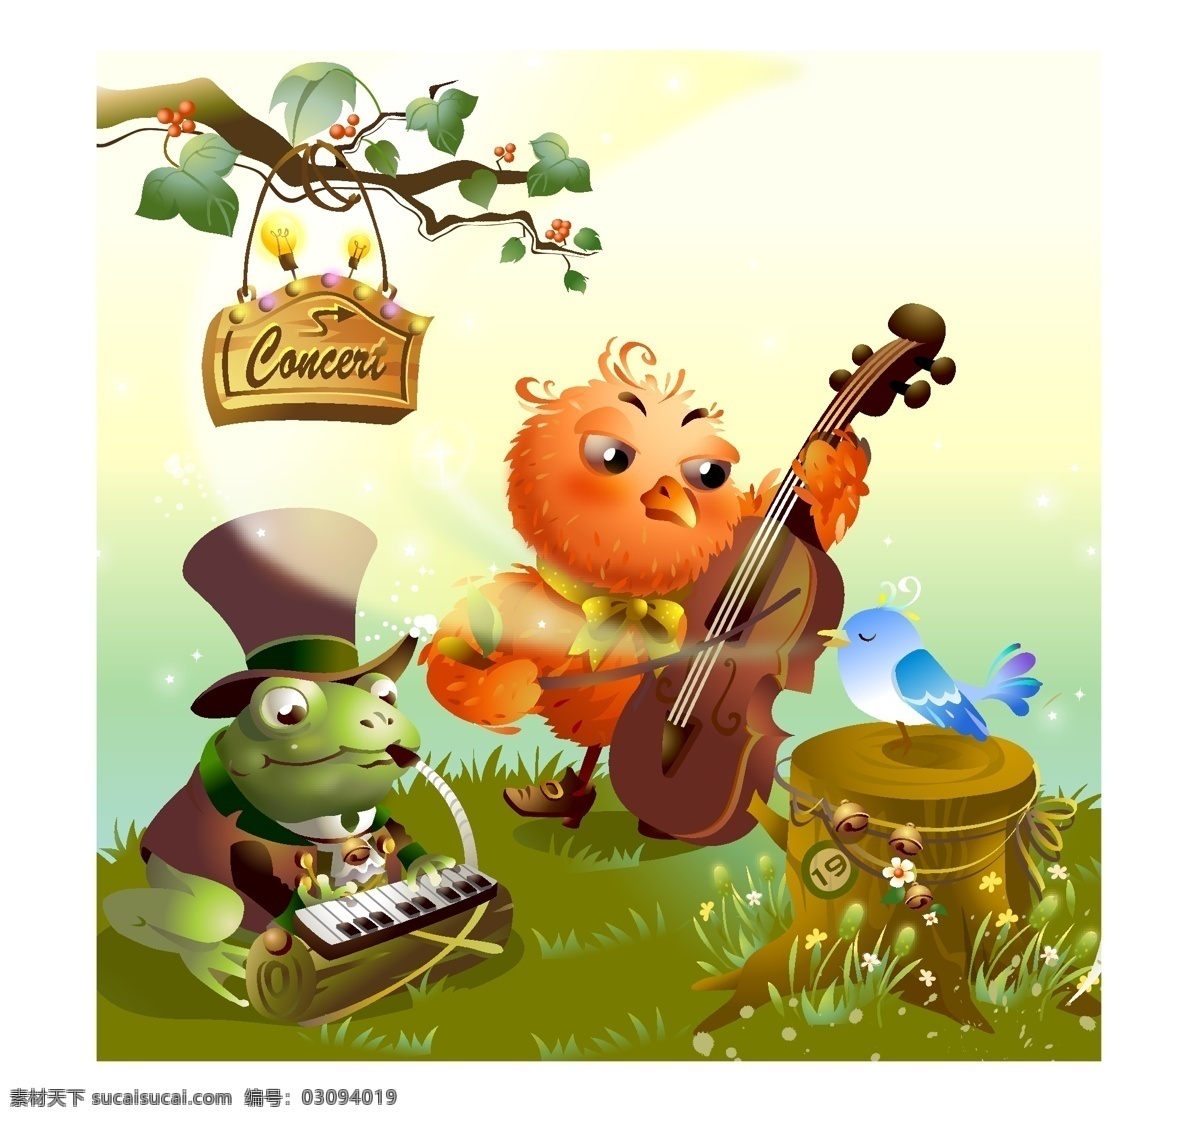 演奏 會 青蛙 小提琴 貓頭鷹 口風琴 演奏會 矢量图 其他矢量图